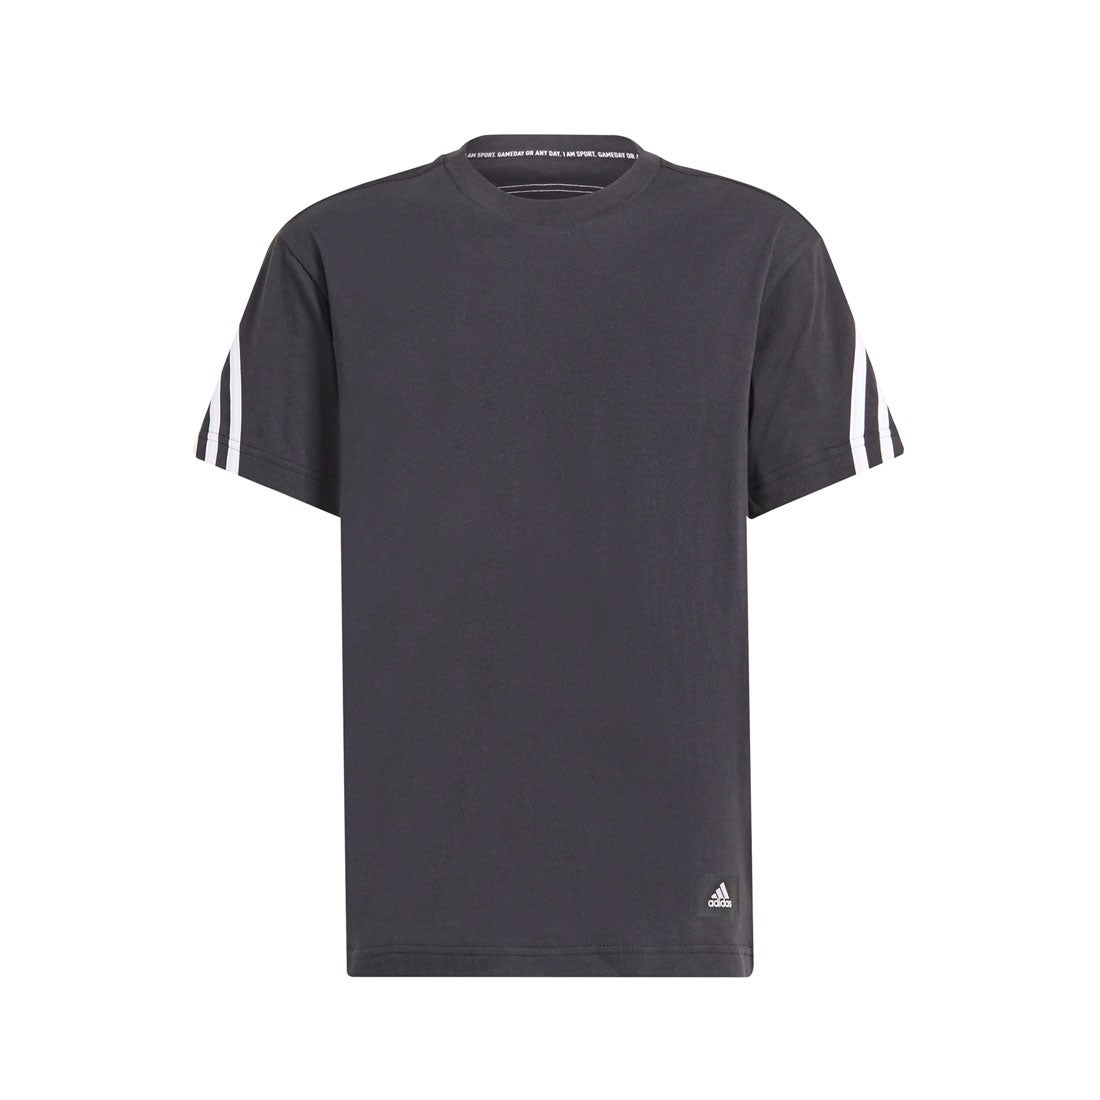 アディダス 話題の行列 adidas フューチャーアイコン 3ストライプス 半袖Tシャツ Icons ブラック Future 2021最新のスタイル 3-Stripes Tee